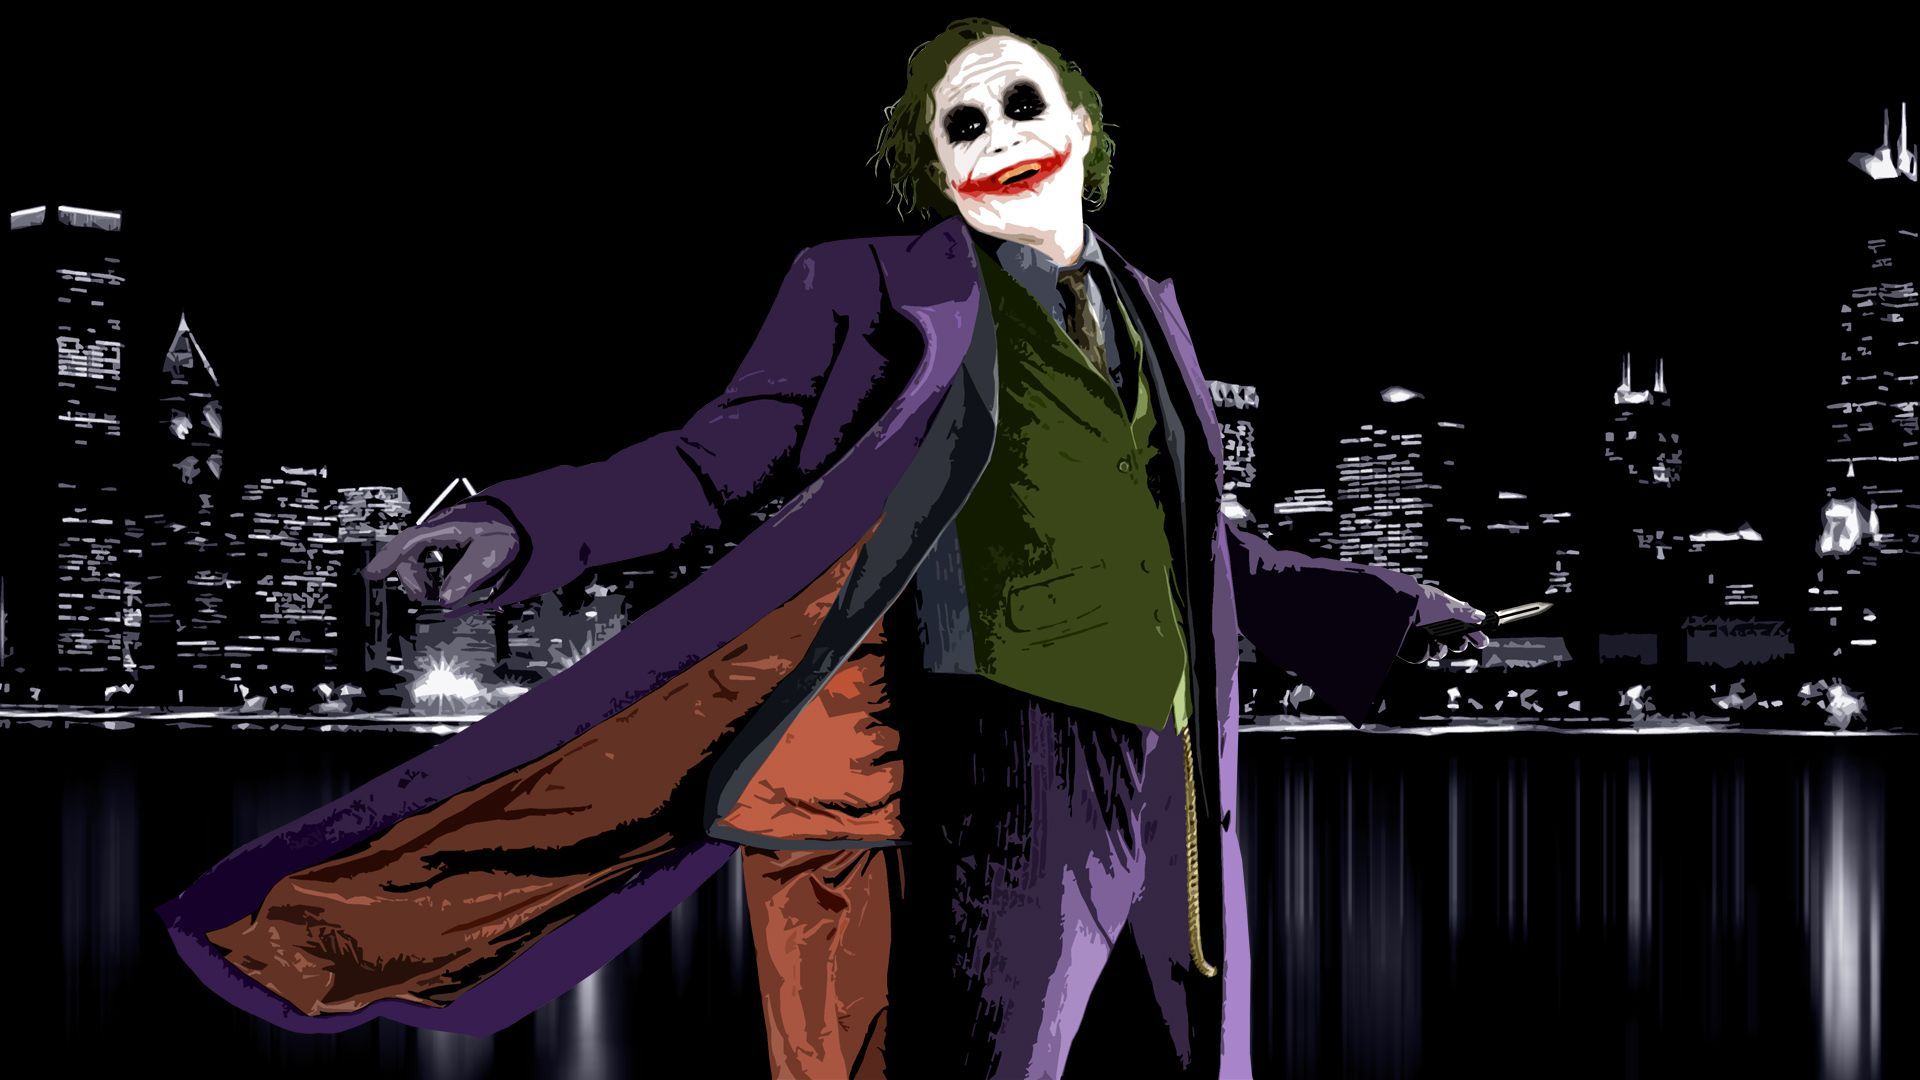 Wallconvert Wallpaper Movies The Joker Dark Knight Html